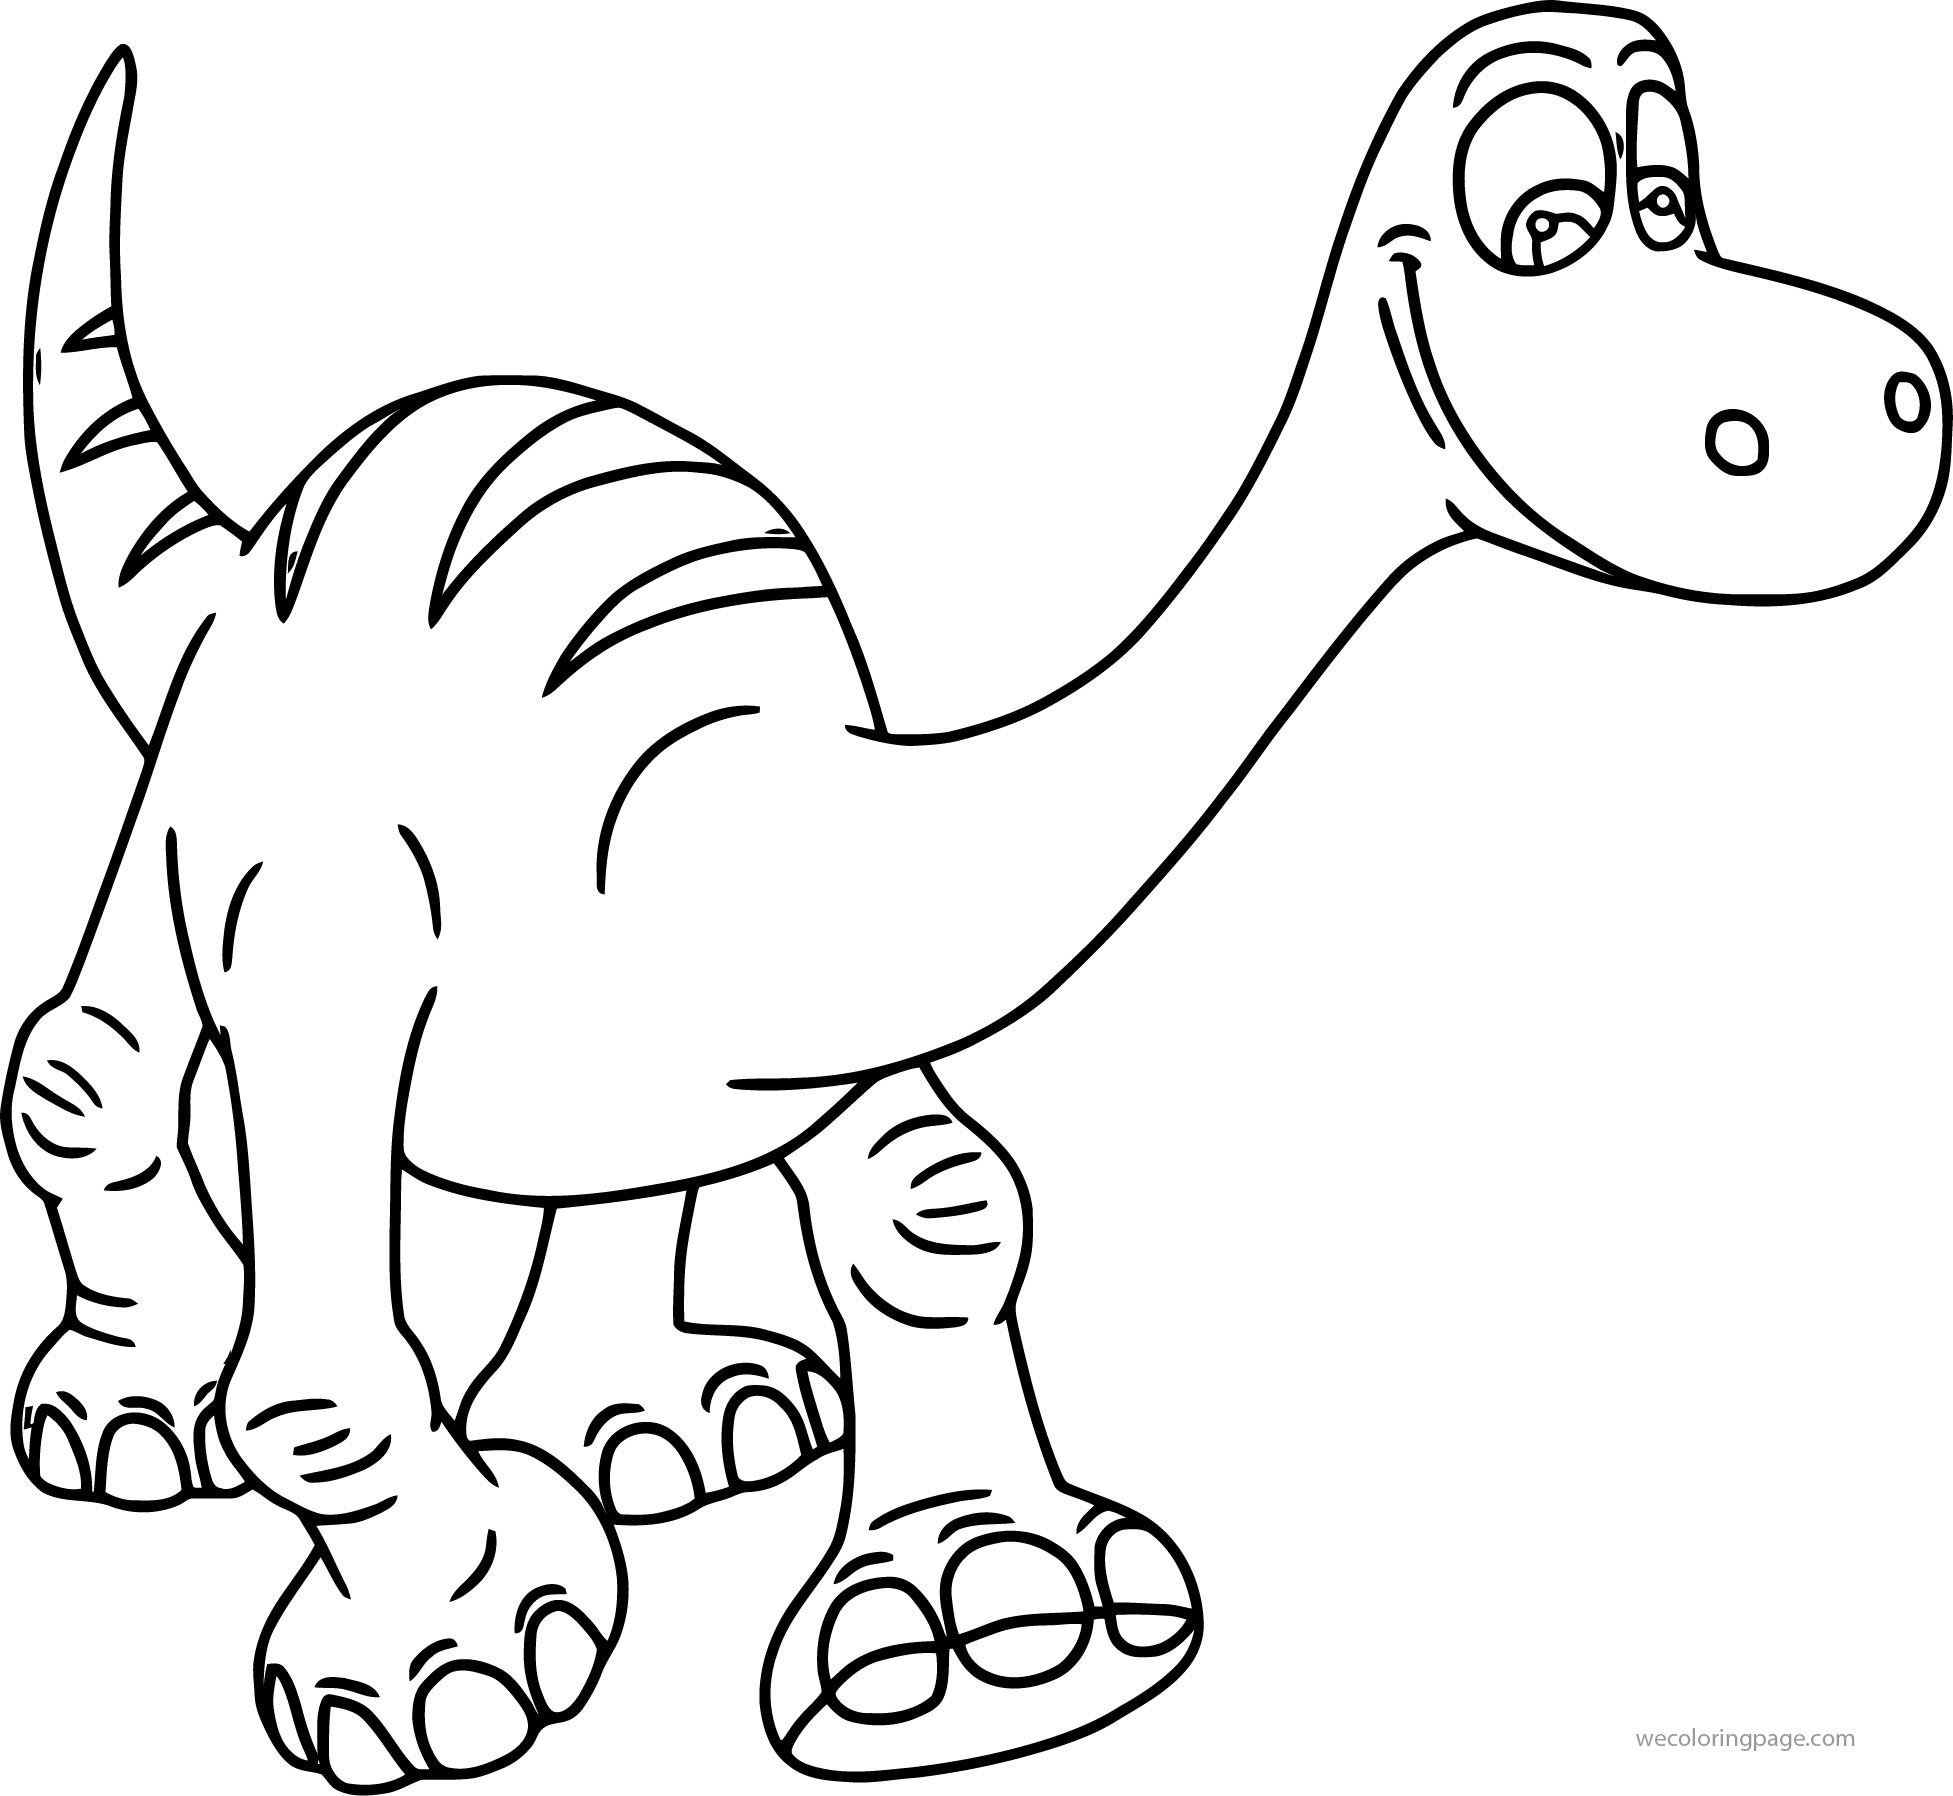 Динозавры для раскрашивания. Динозавры / раскраска. Раскраска "Динозаврики". Динозавр раскраска для детей. Раскраски для мальчиков динозавры.